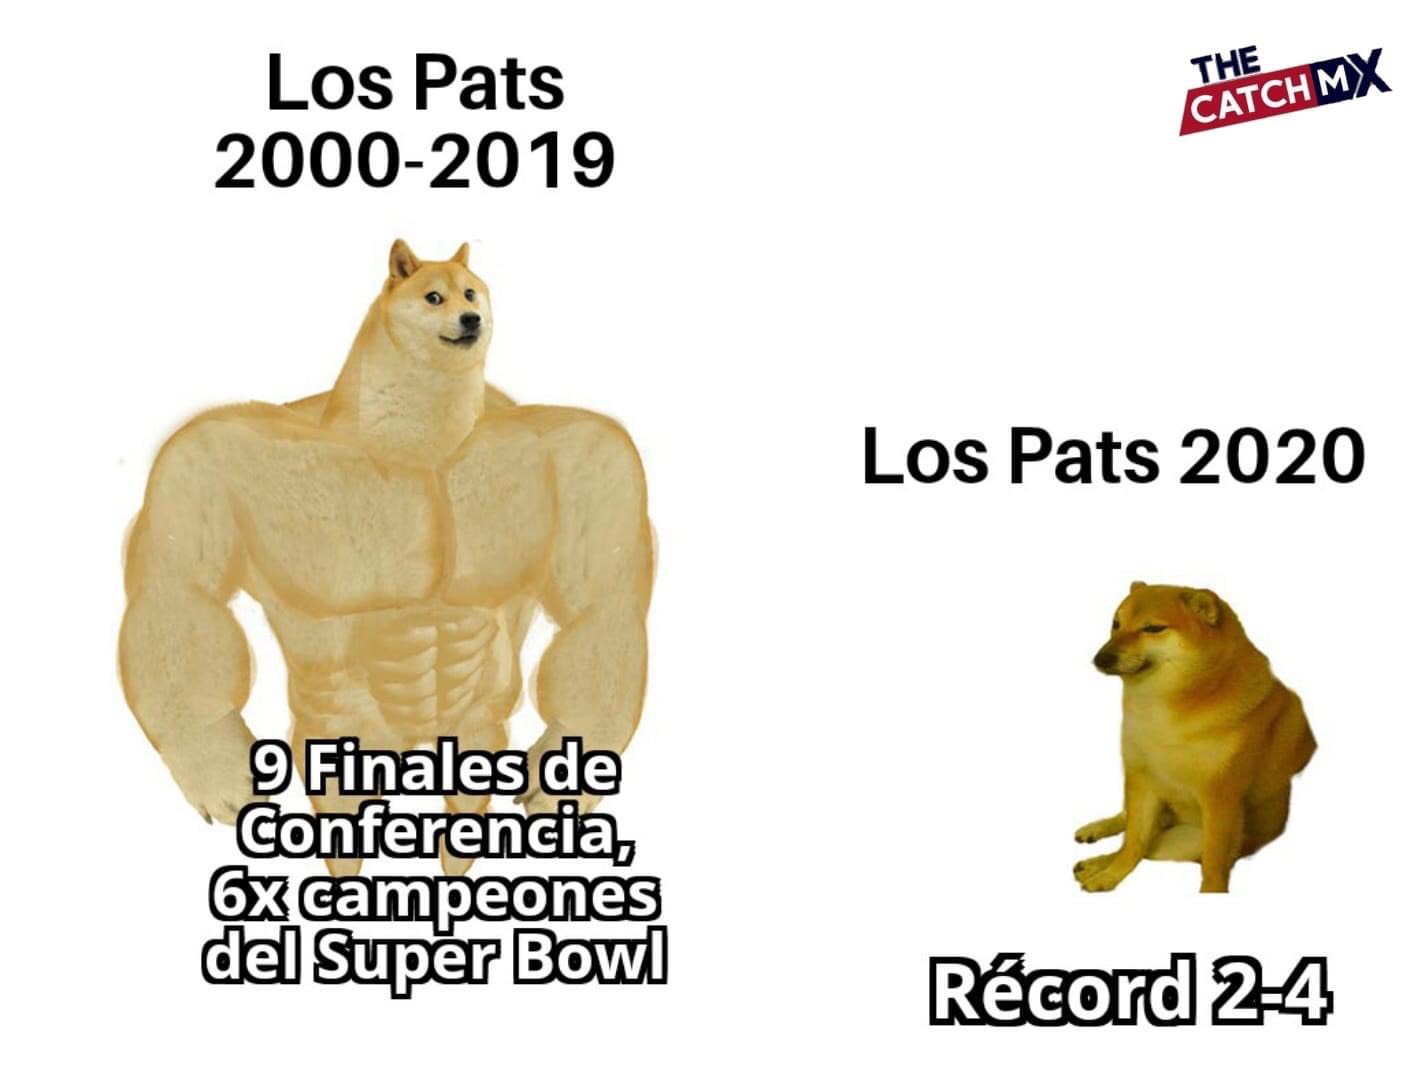 Memes de la NFL, Semana 7